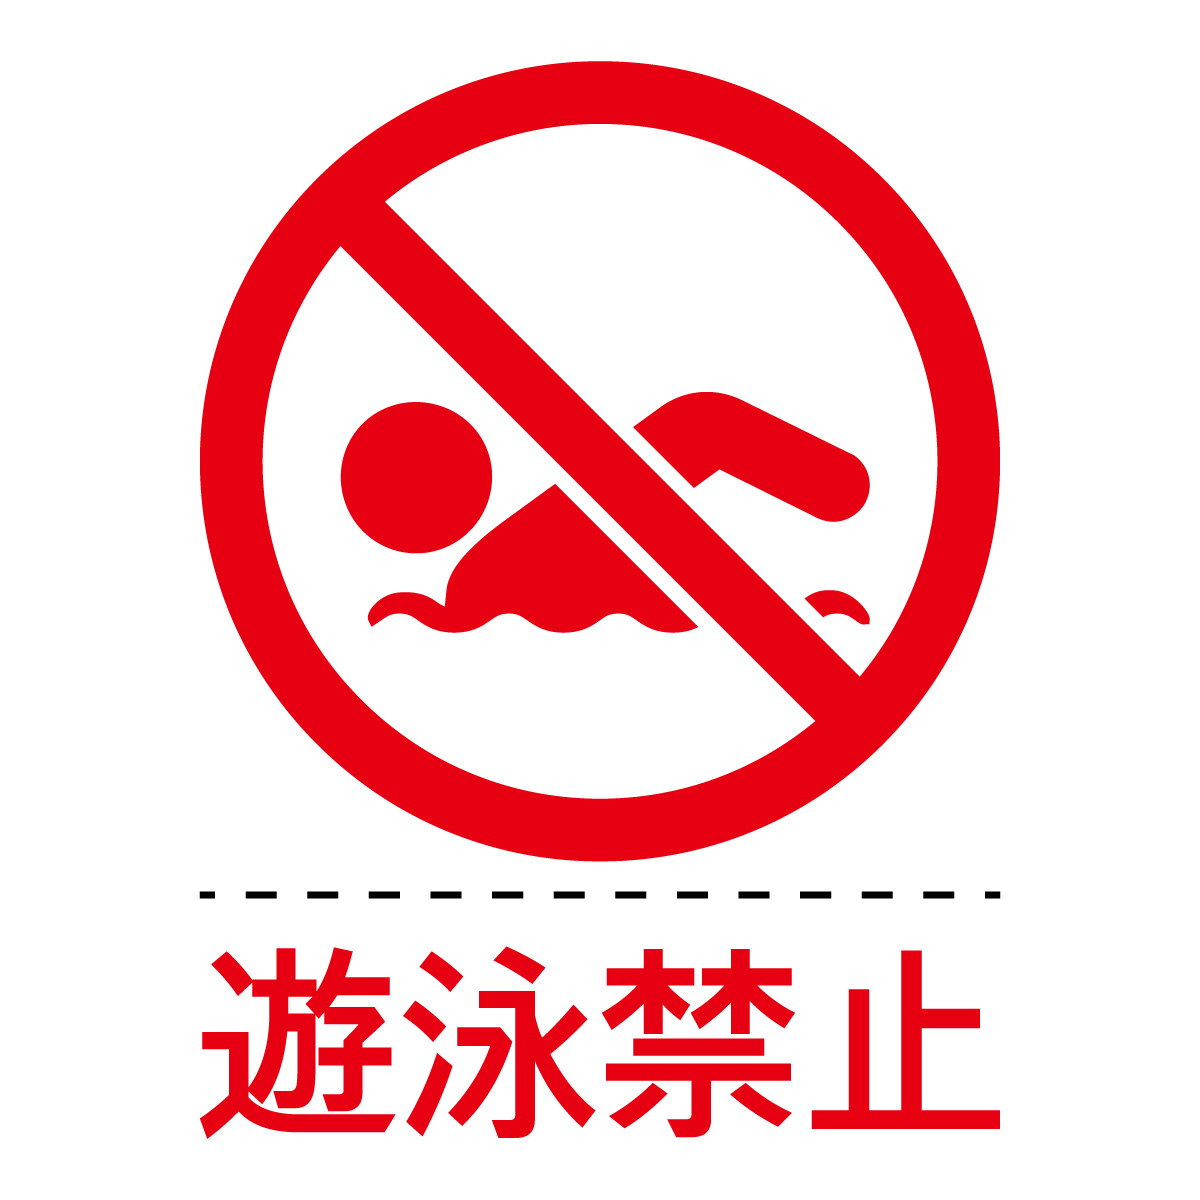 遊泳禁止マーク 遊泳禁止の文字付き のカッティングステッカーシール 標識 アイコンなどのシール カッティング ステッカー 販売